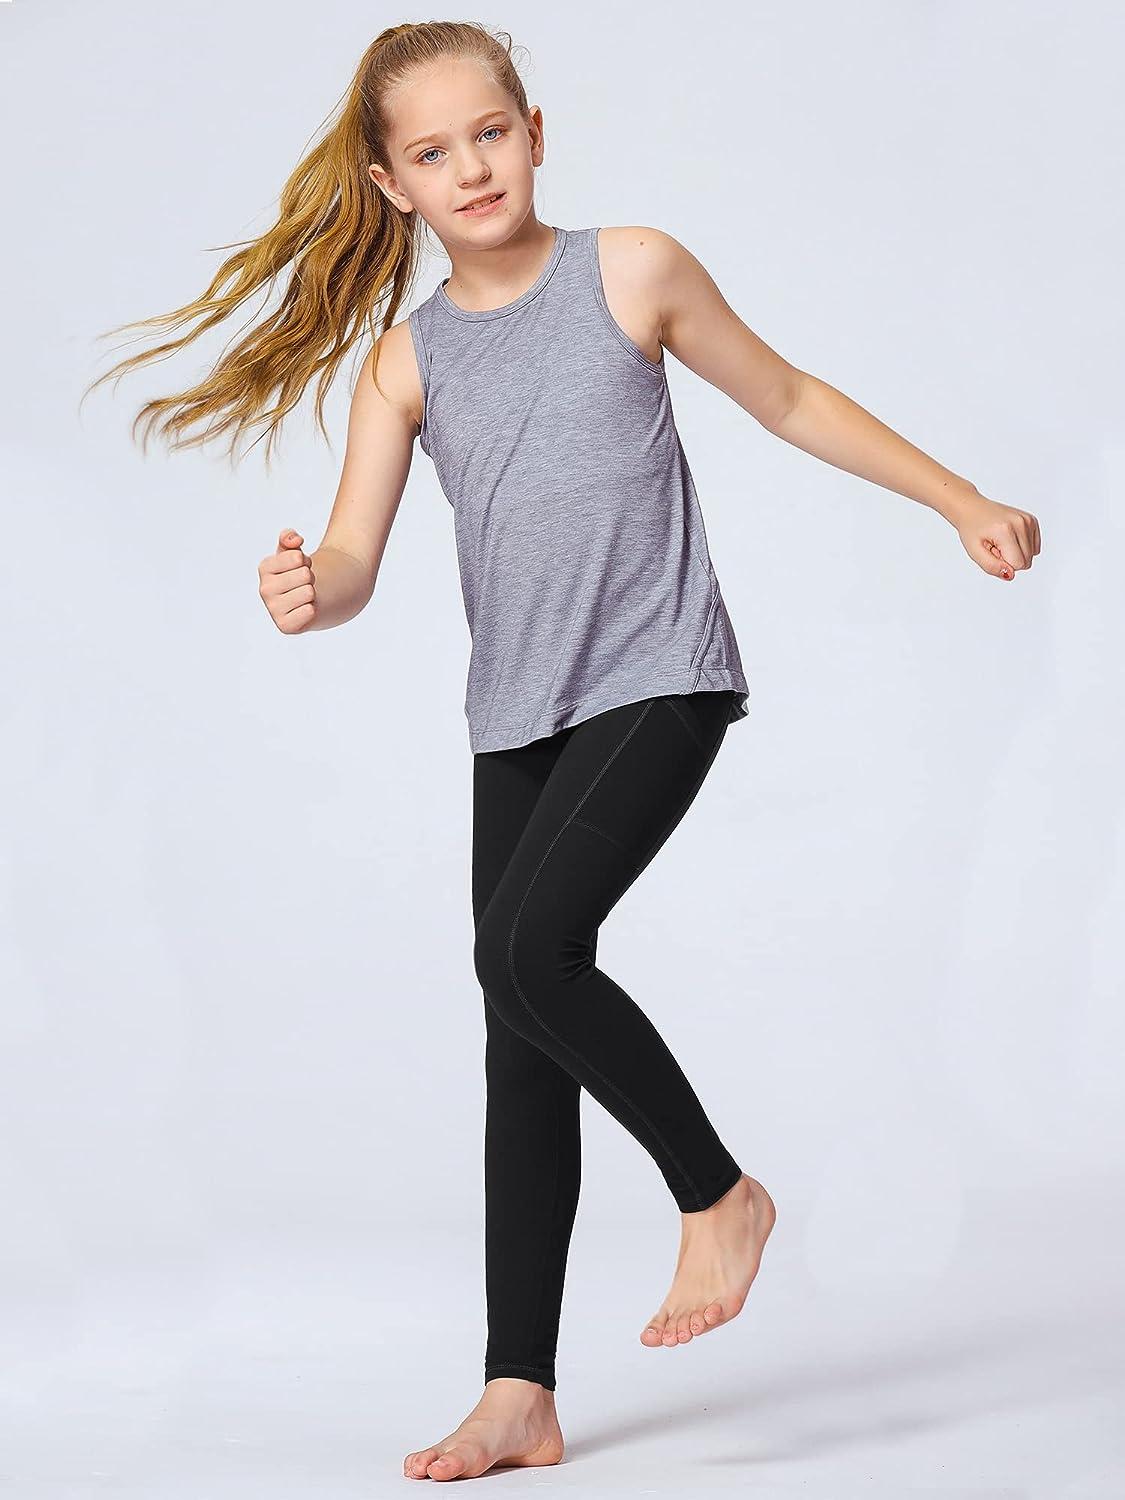 Stelle Girls' Athletic Leggings Kids Dance Running Yoga Pants